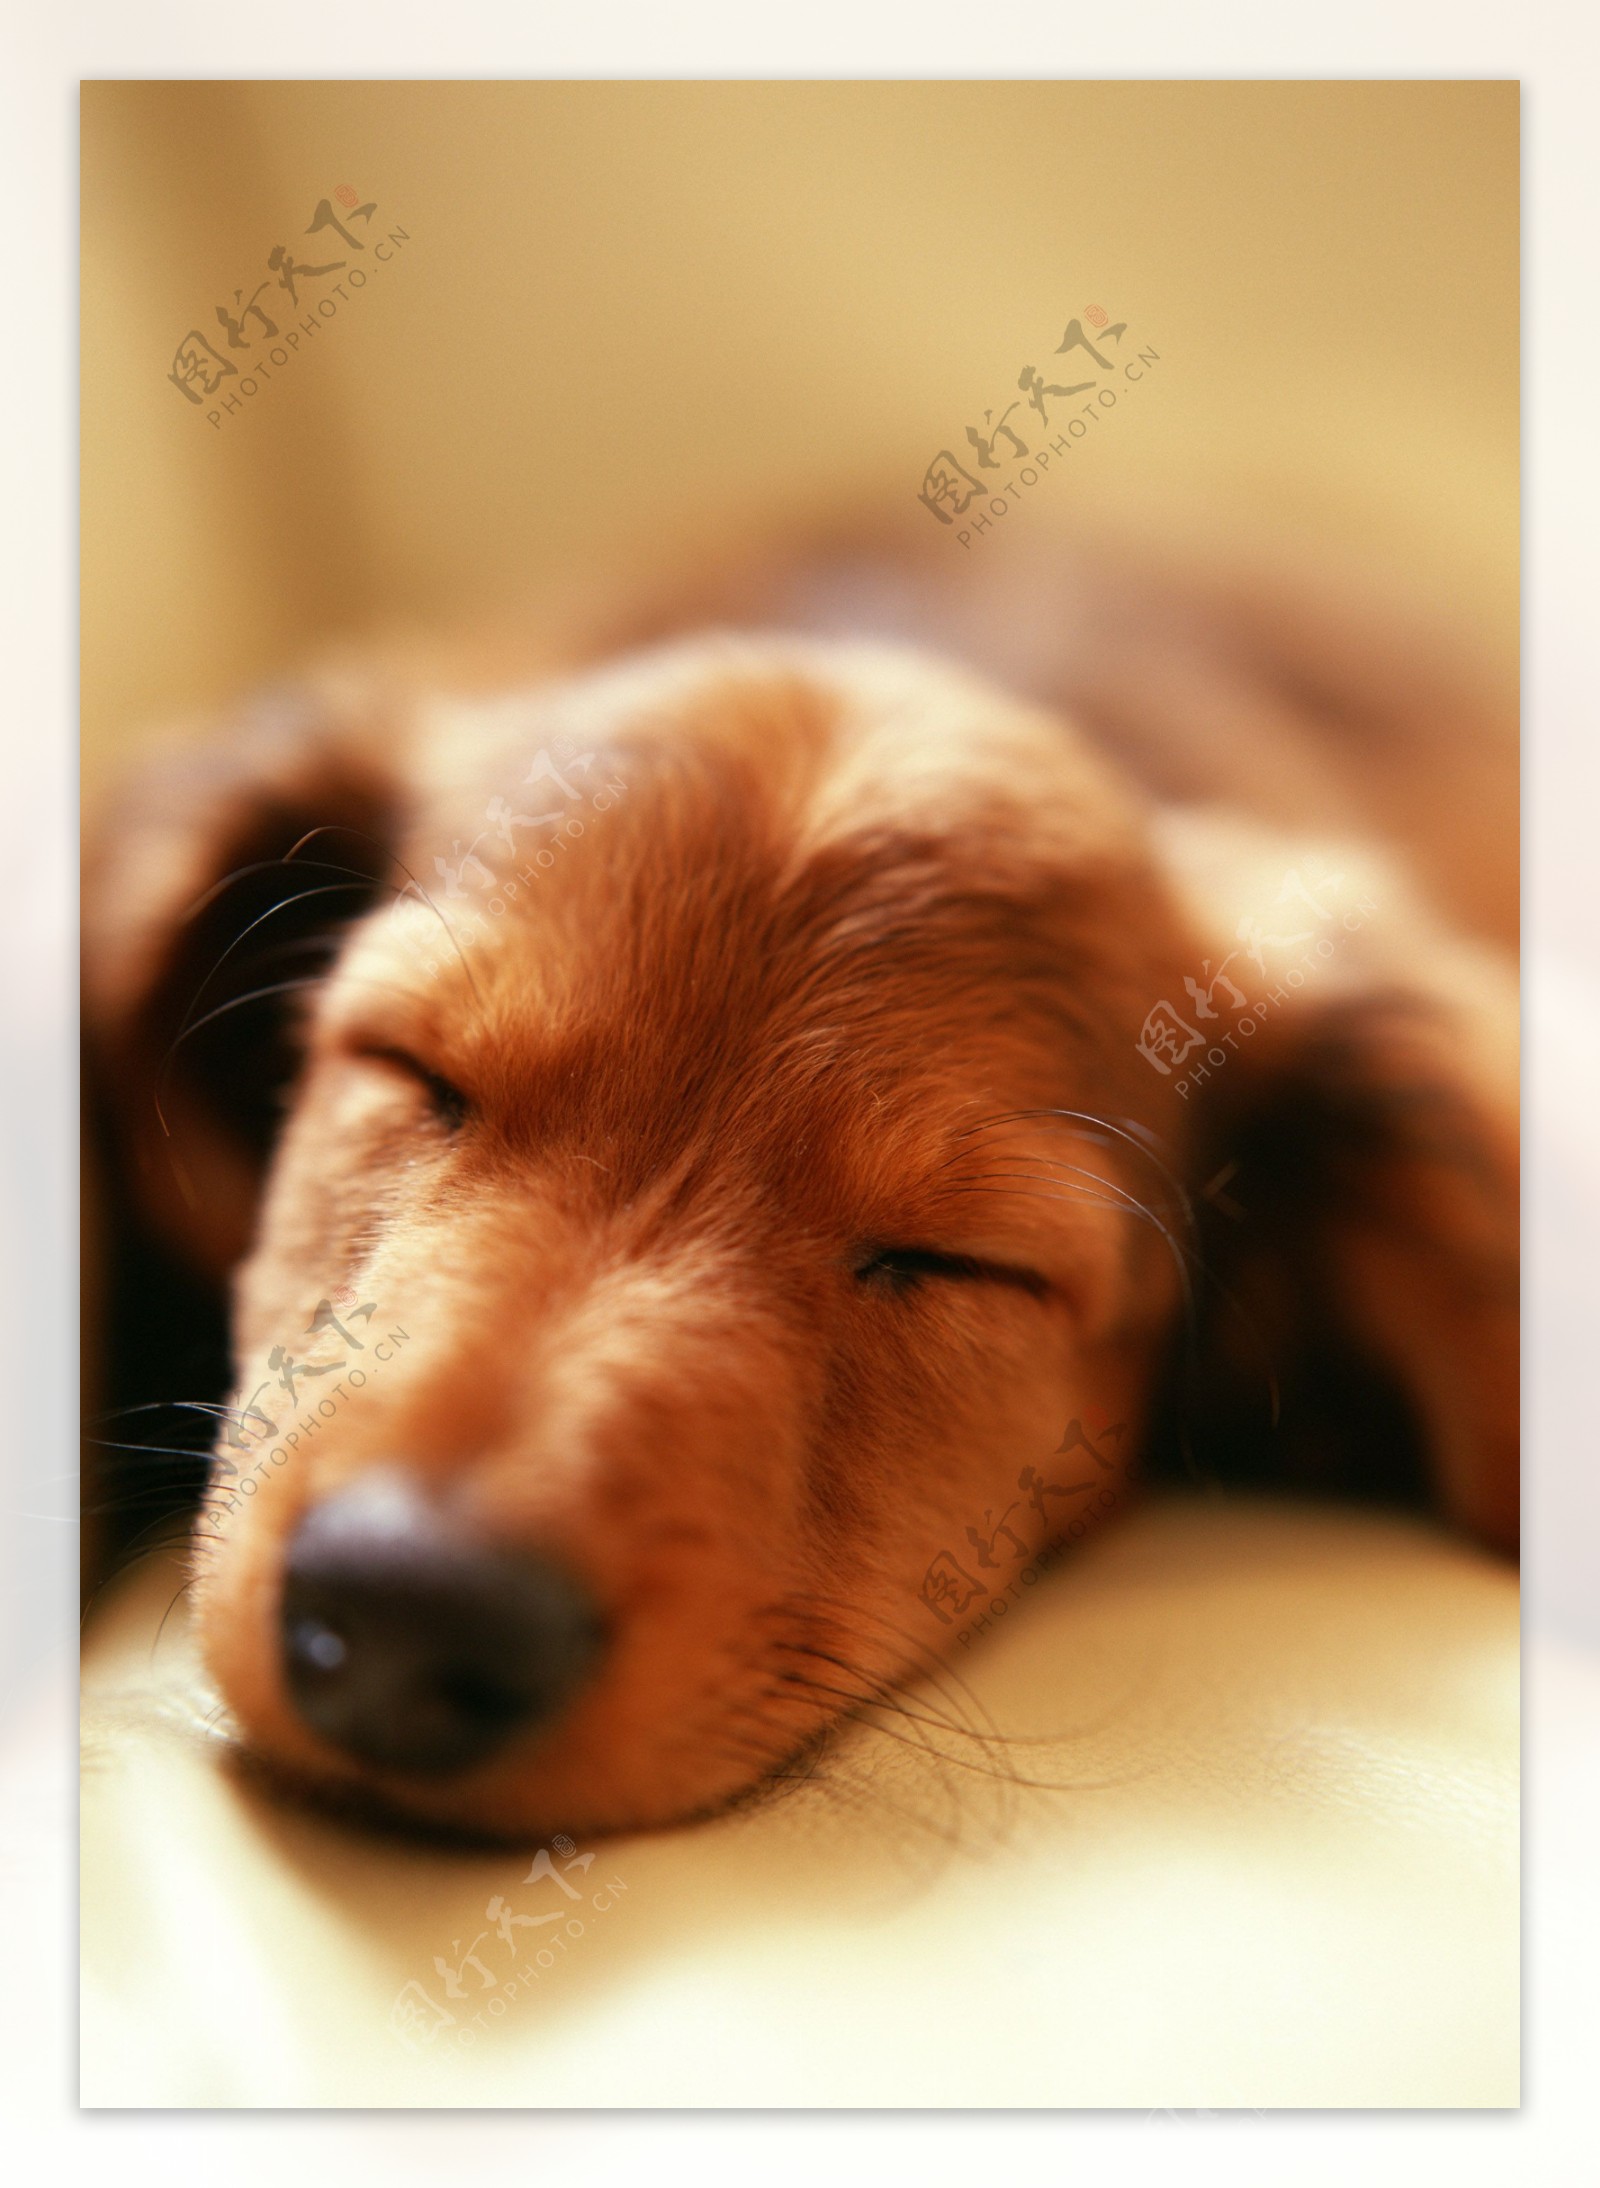 睡着的狗狗头部特写图片